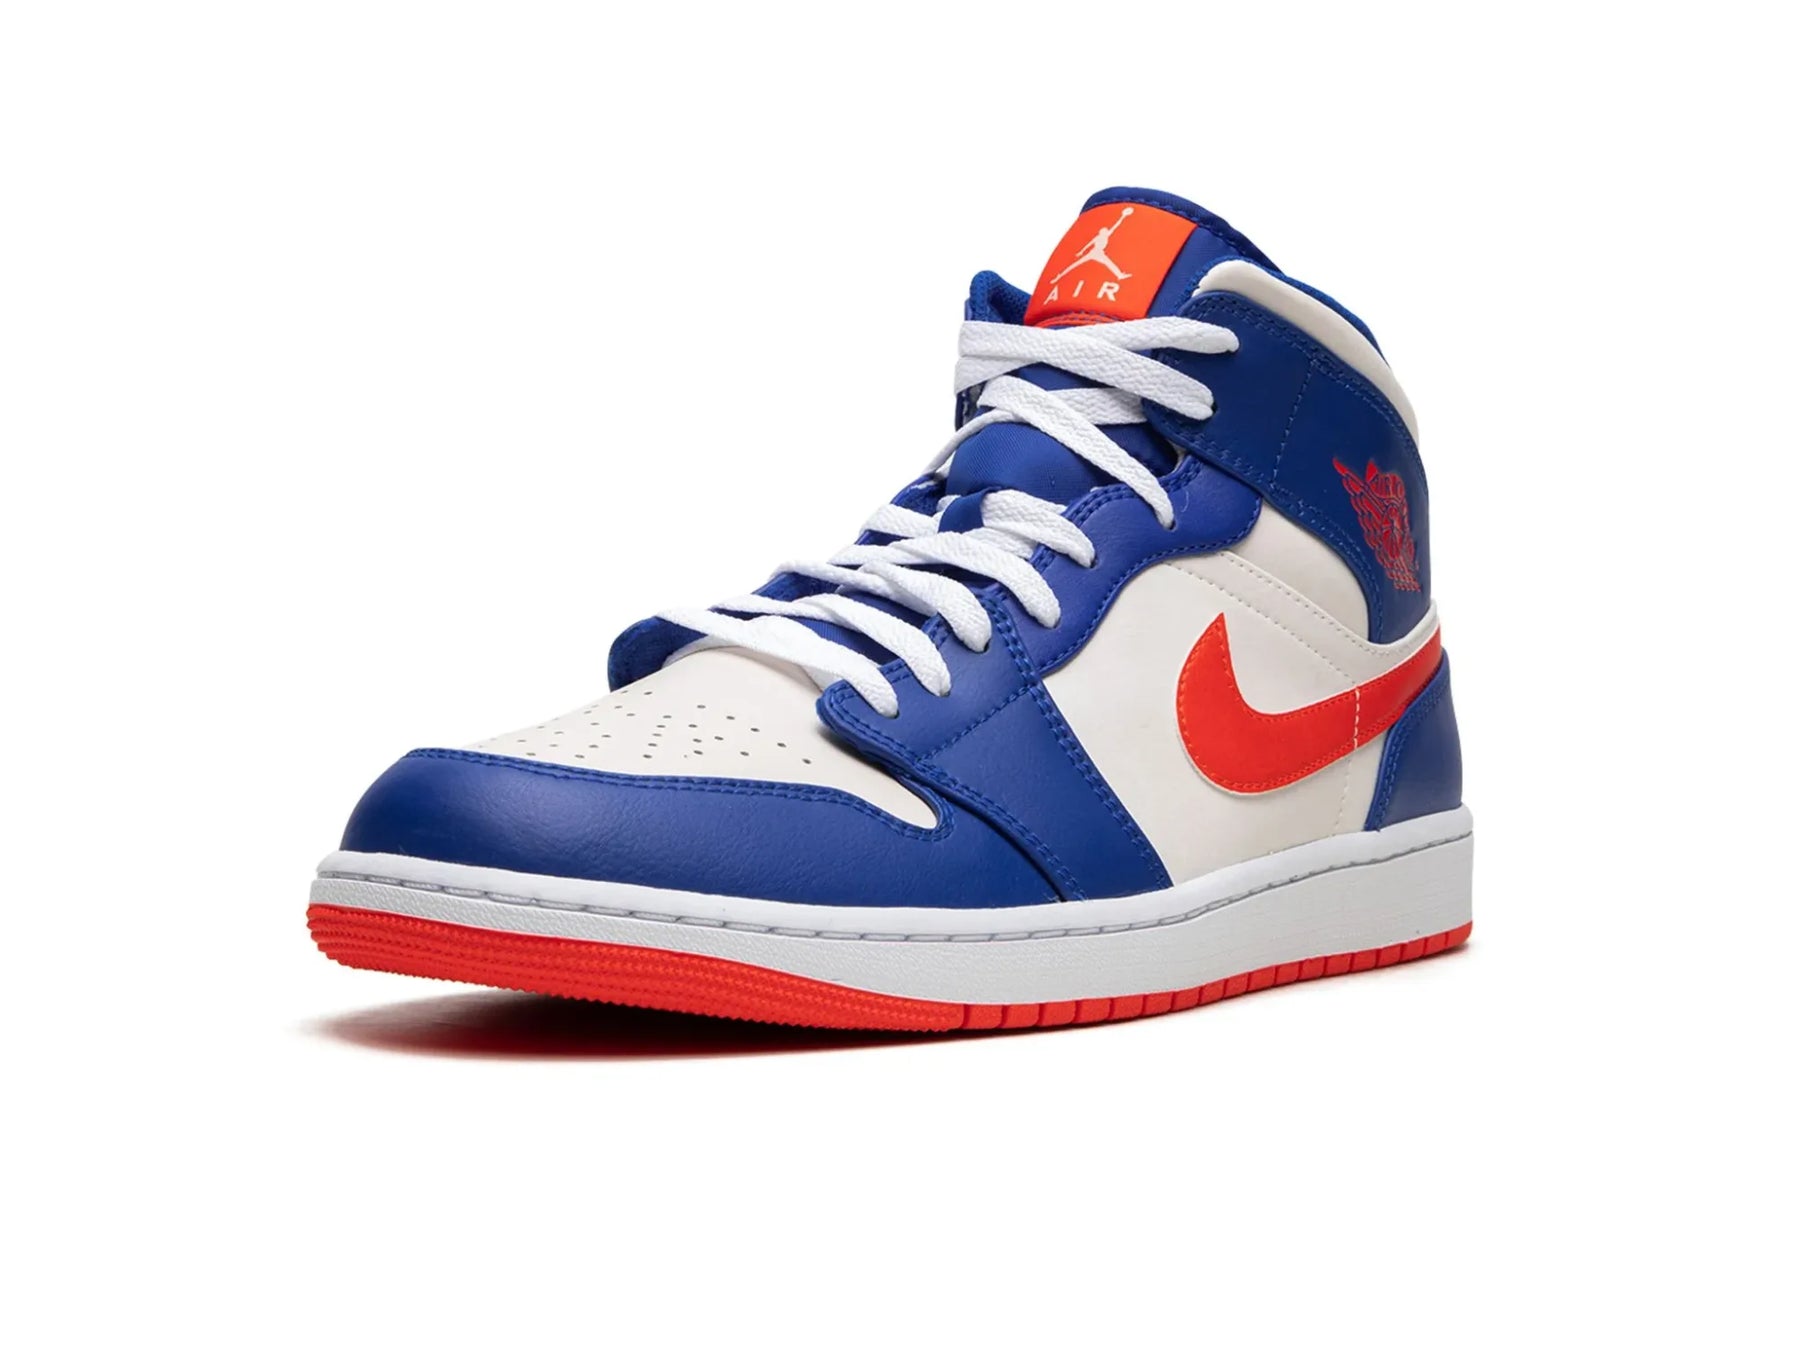 Nike Air Jordan 1 Mid "Knicks" - street-bill.dk